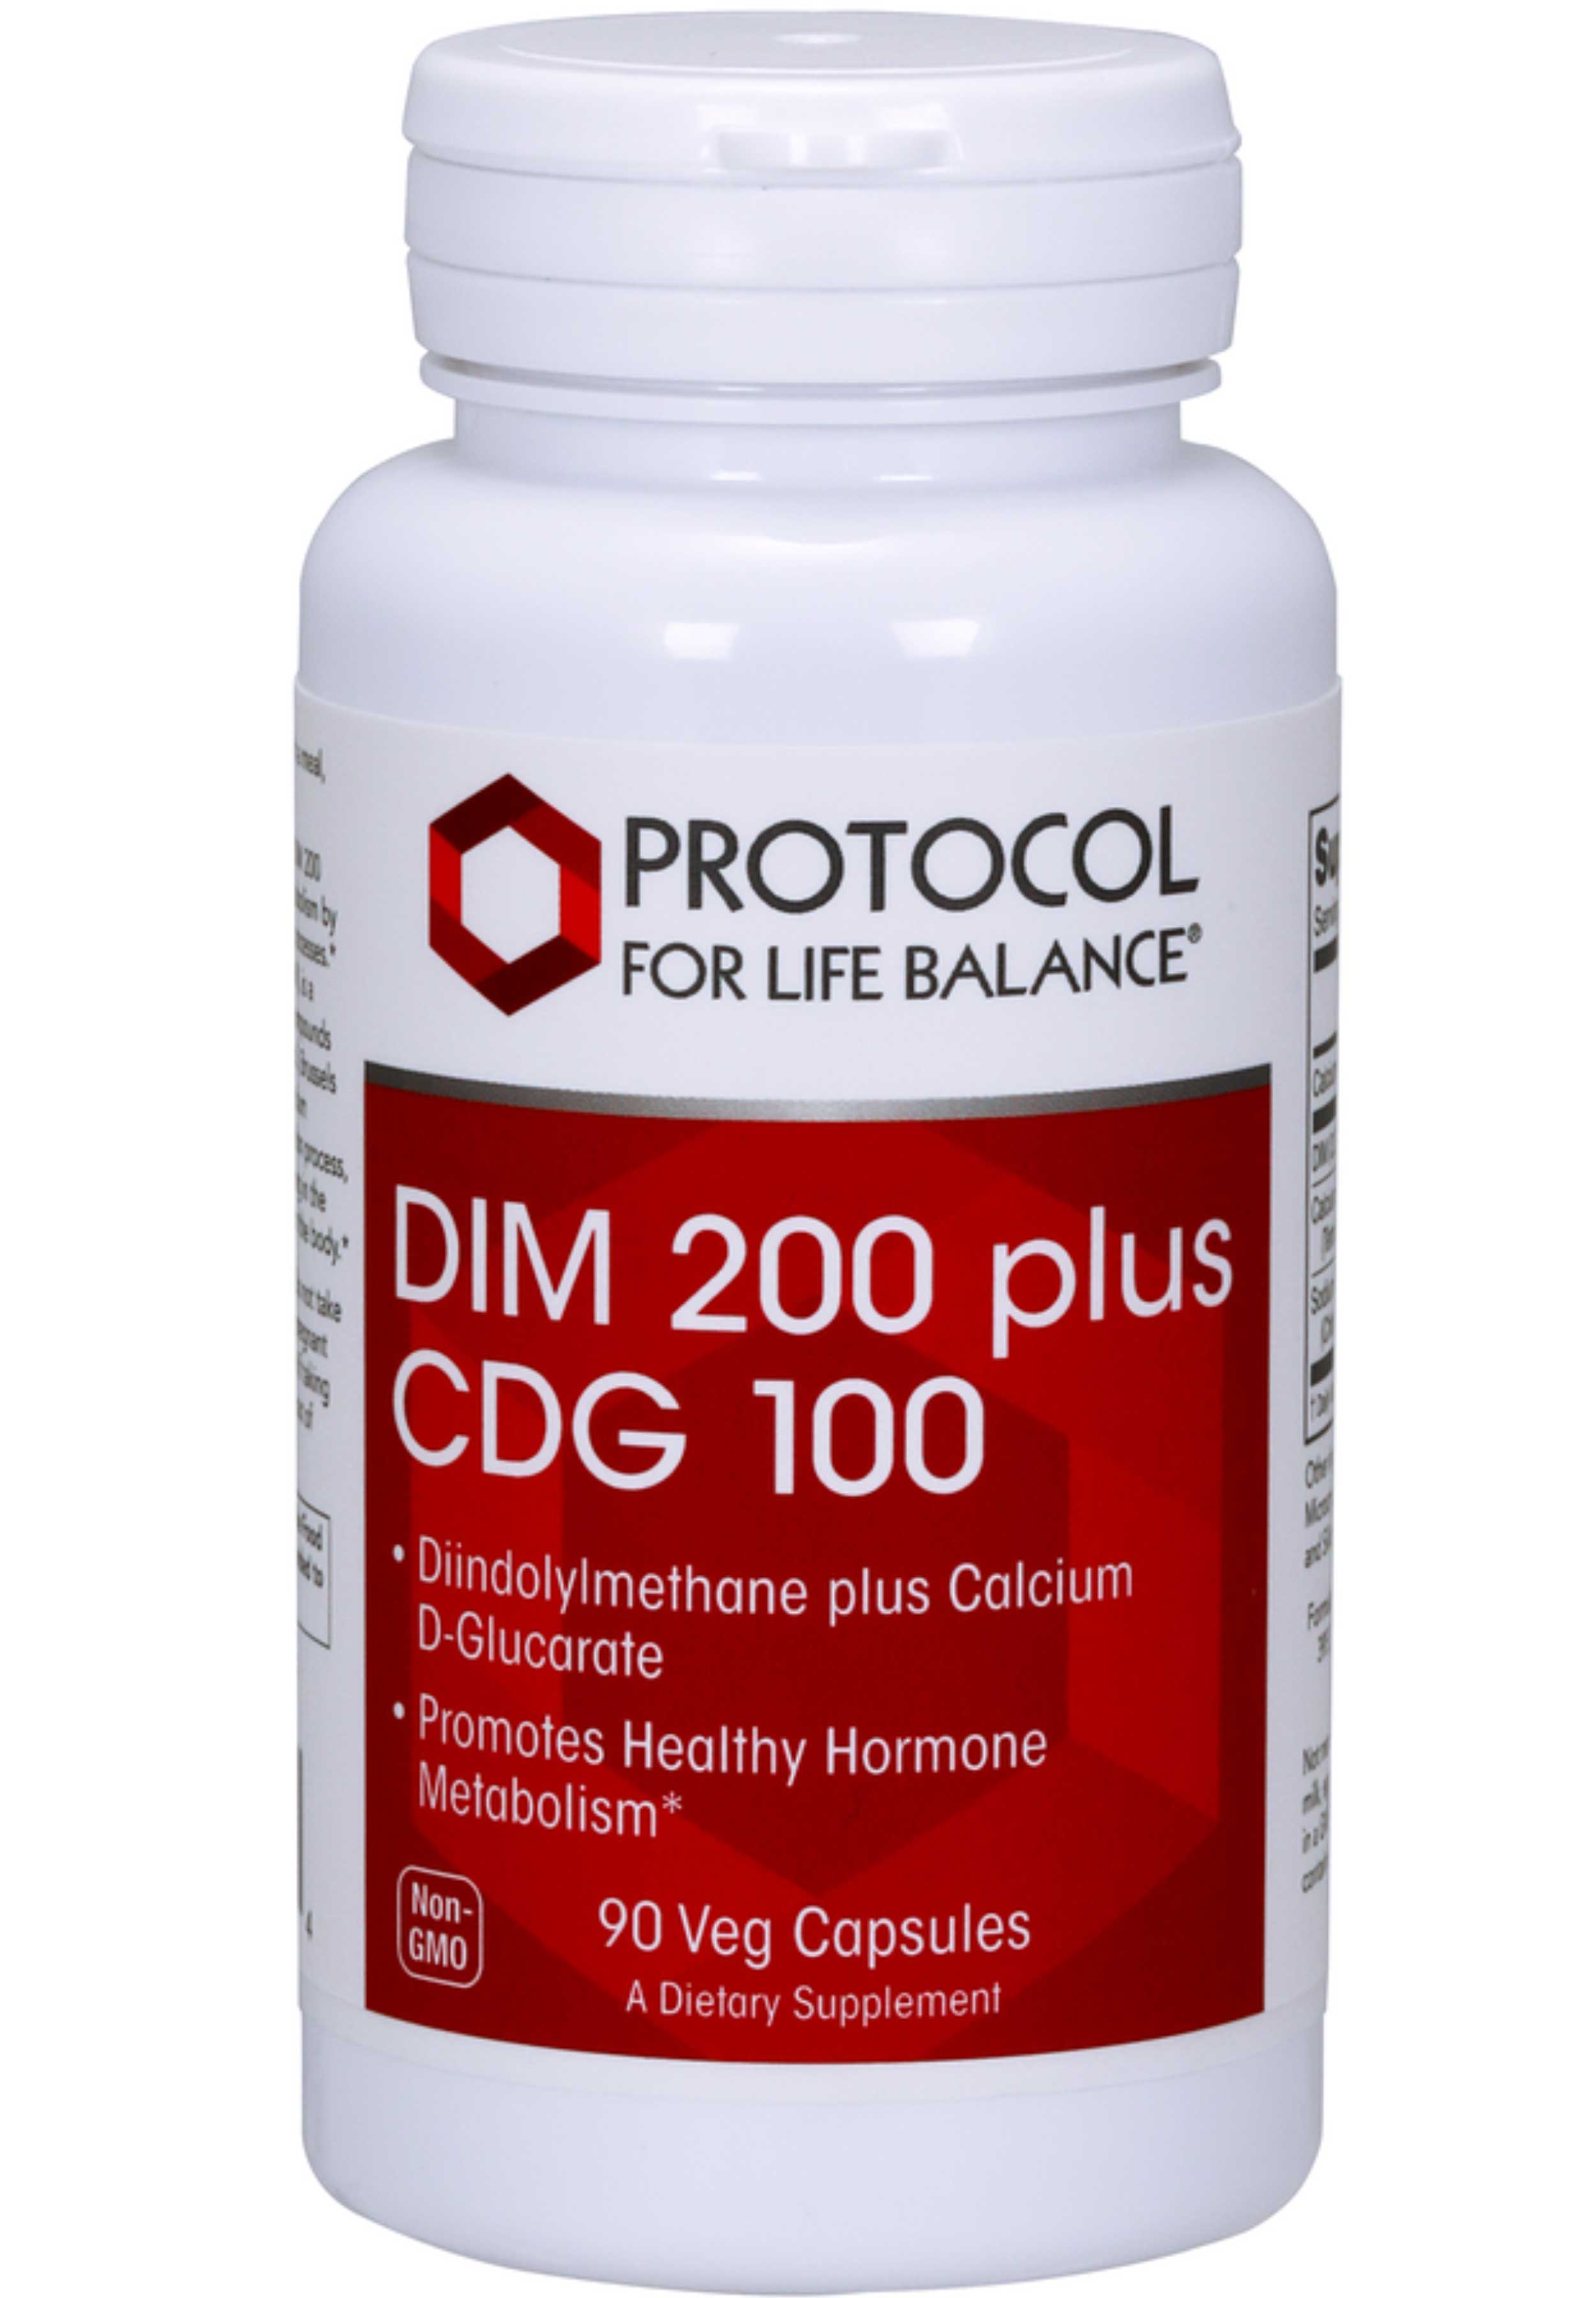 Protocol for Life Balance DIM 200 Plus CDG 100